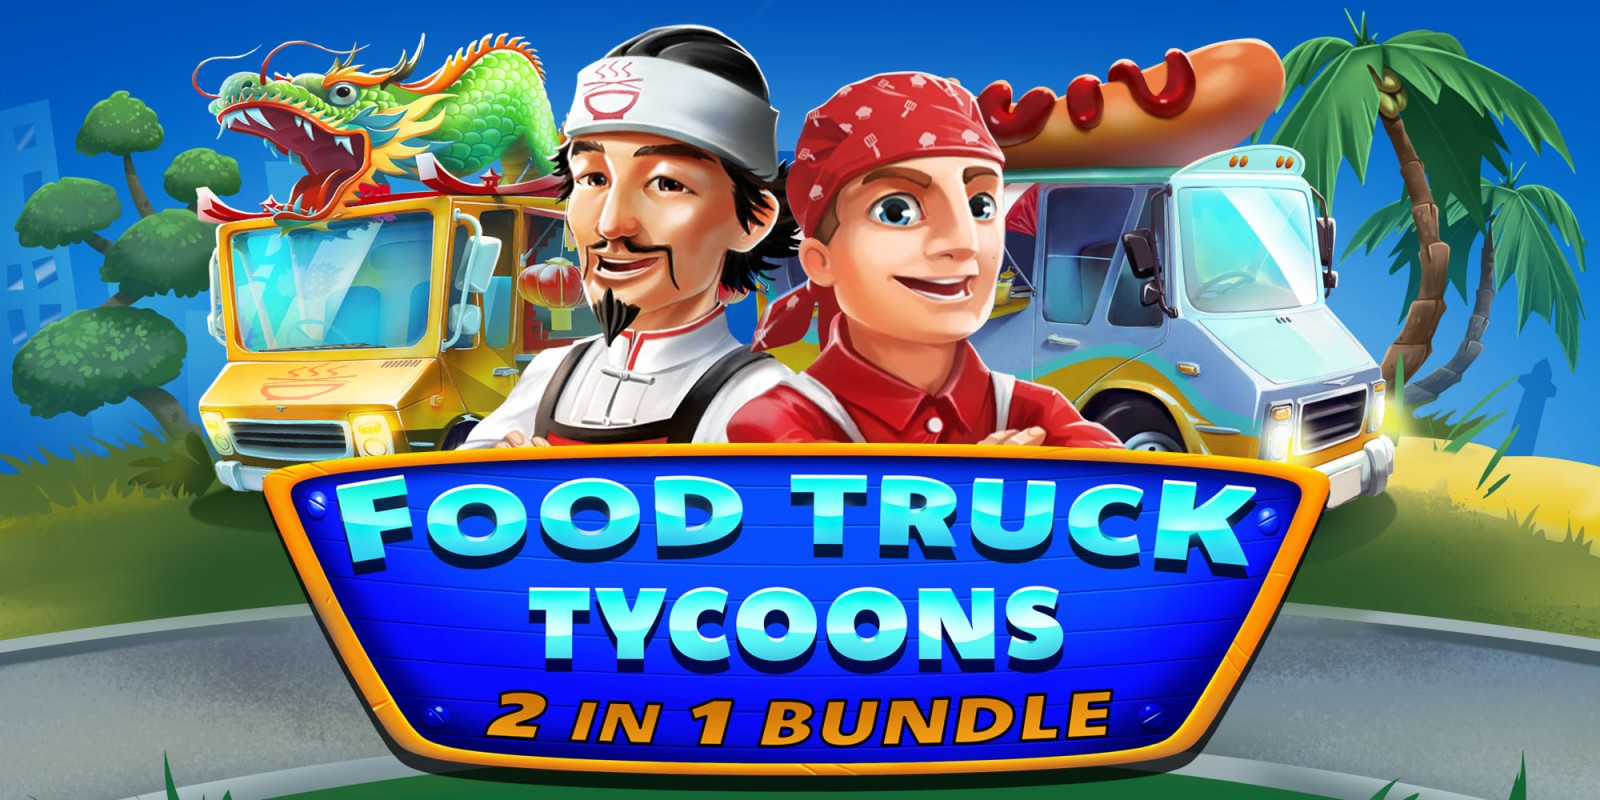 Food Truck Tycoons - 2 in 1 Bundle